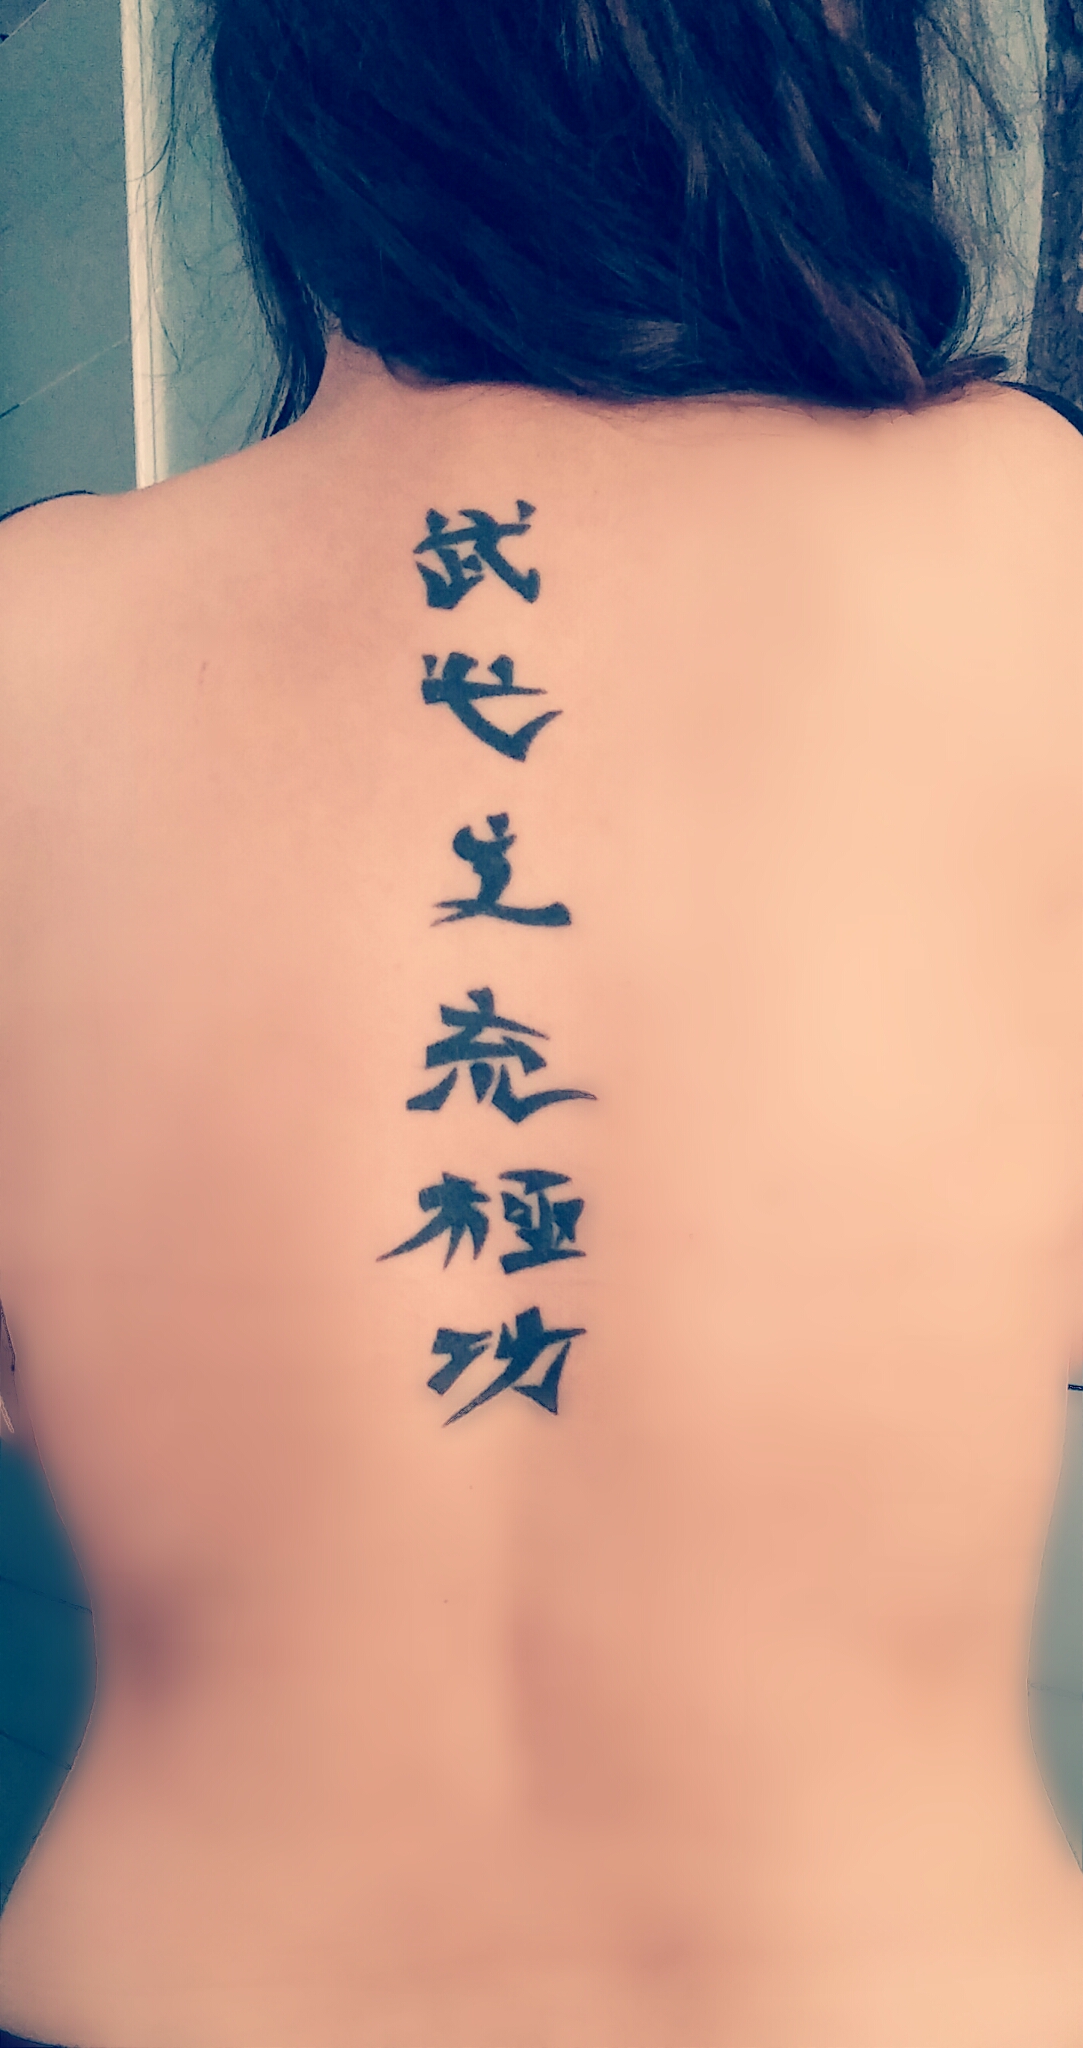 Chinesische Tattoos